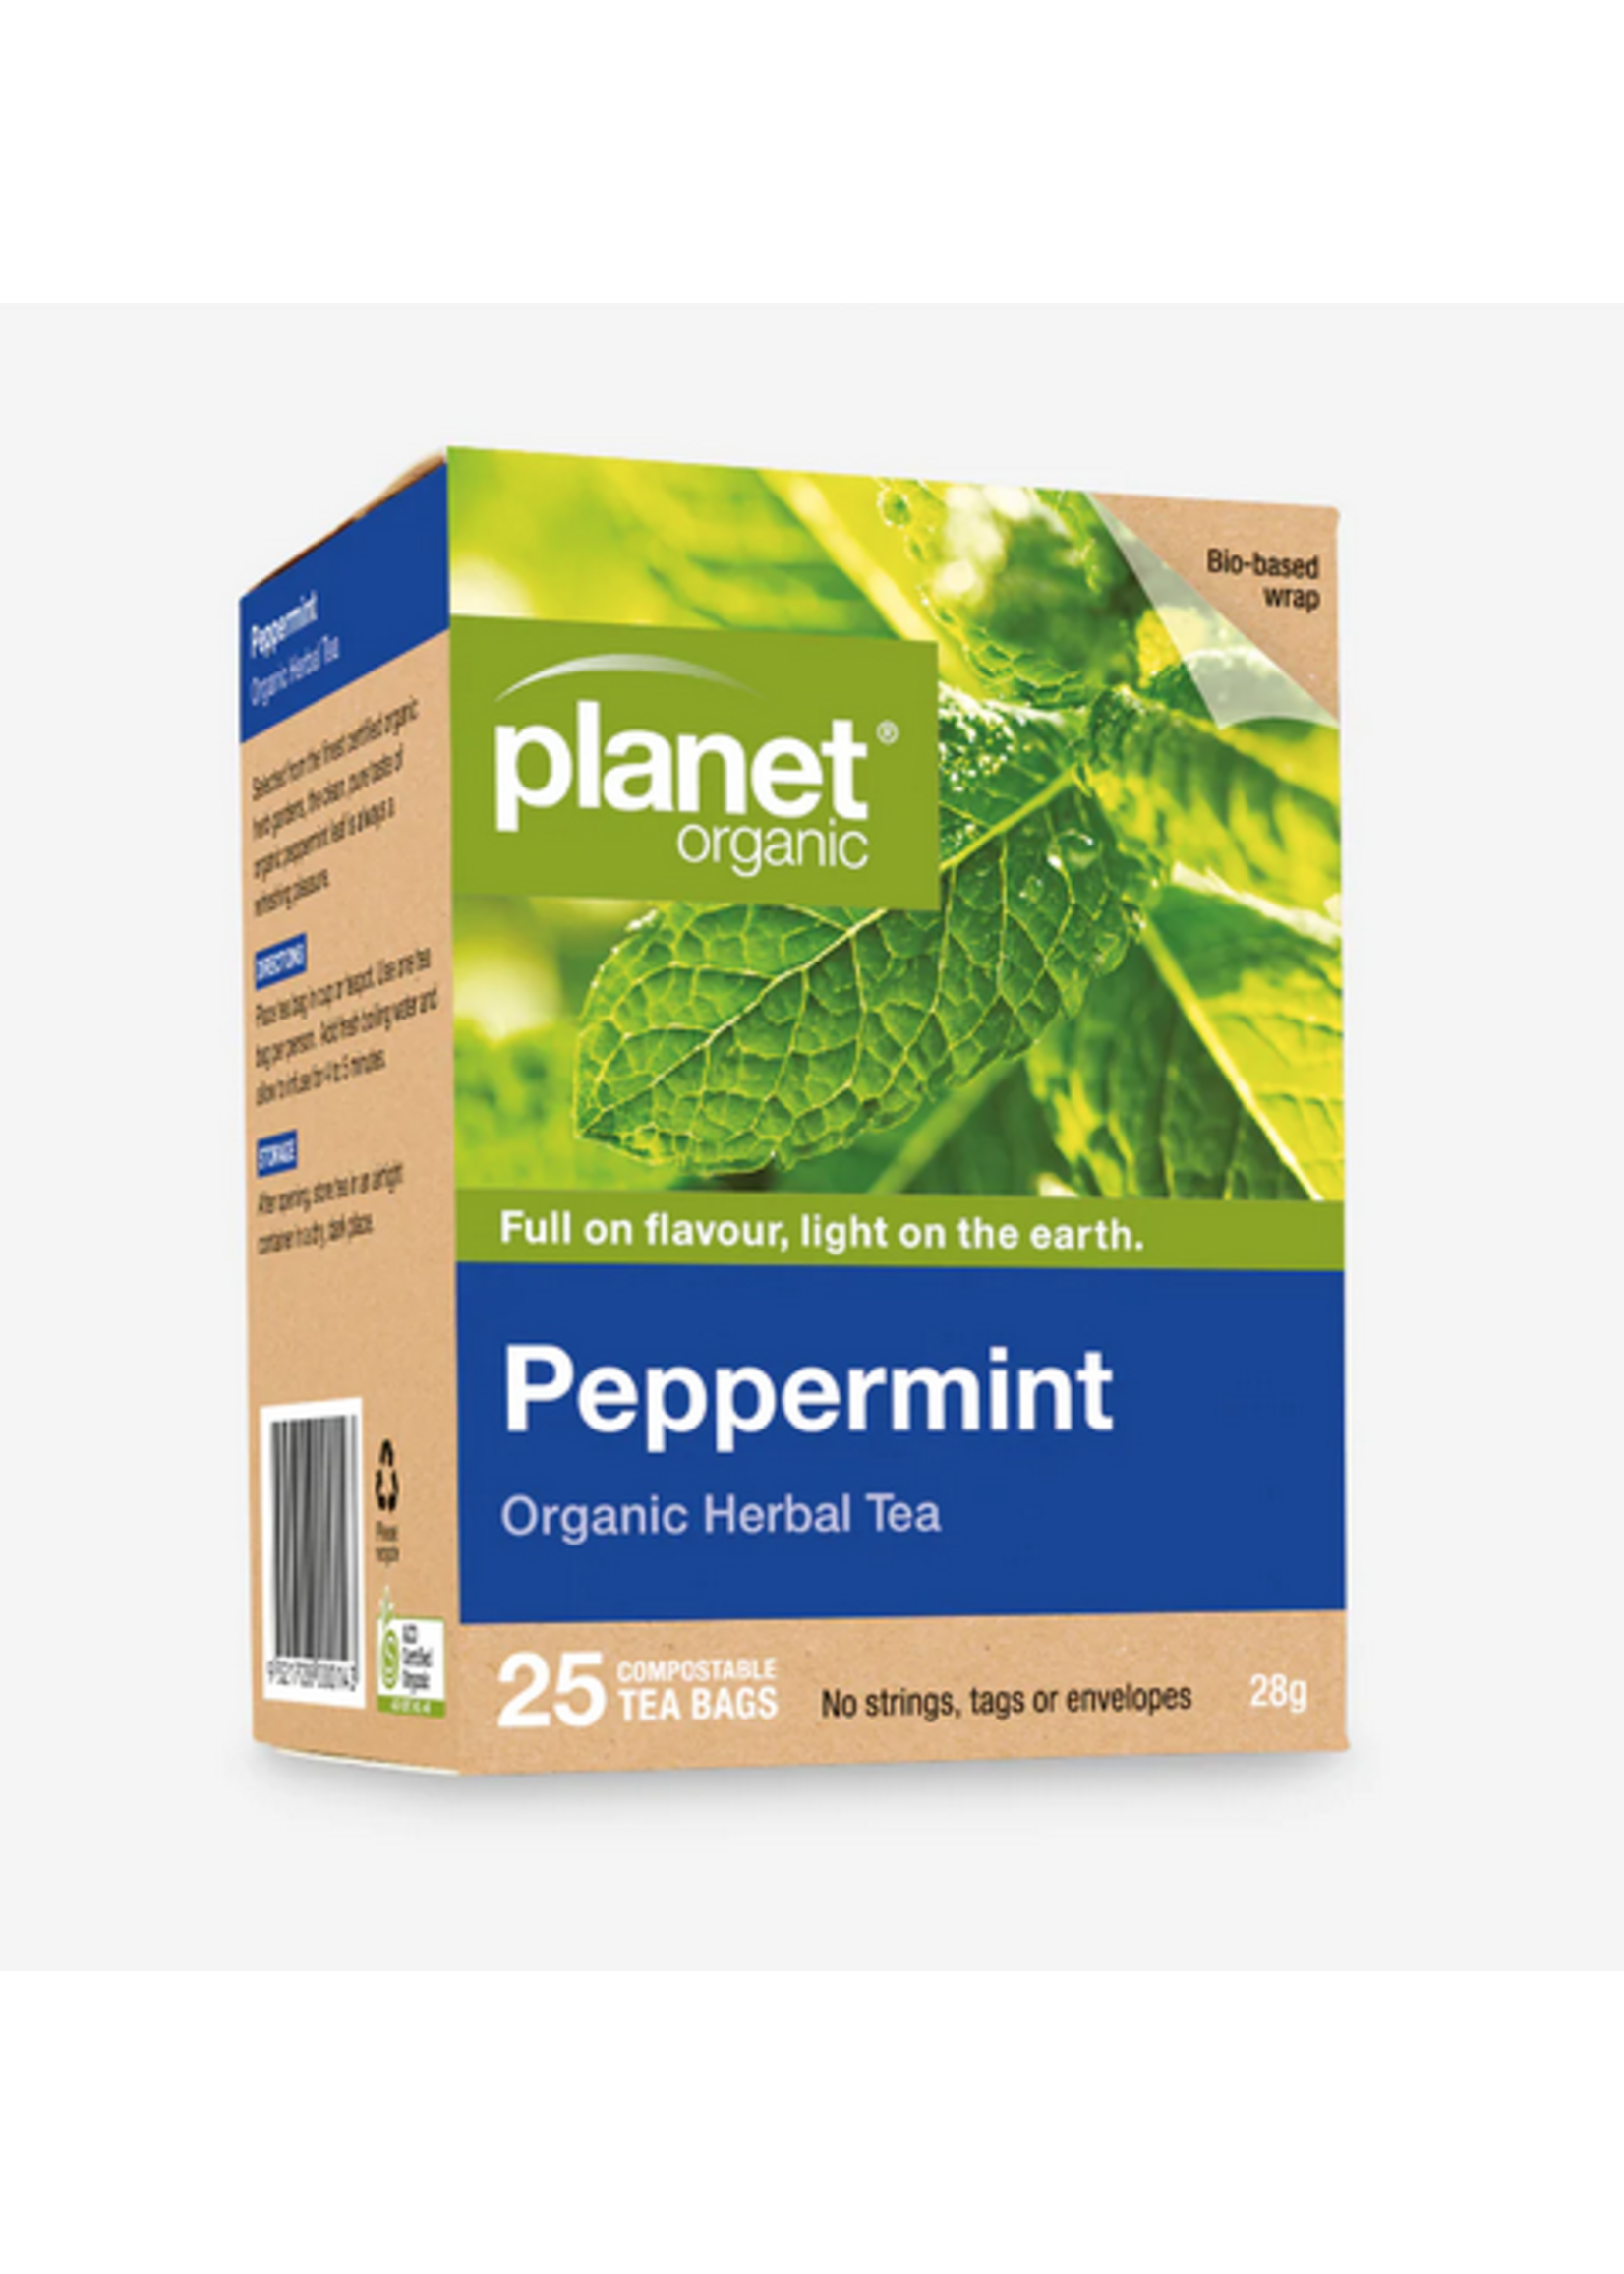 Planet Organic Planet Organic Peppermt Tea 28g 25 tea bags